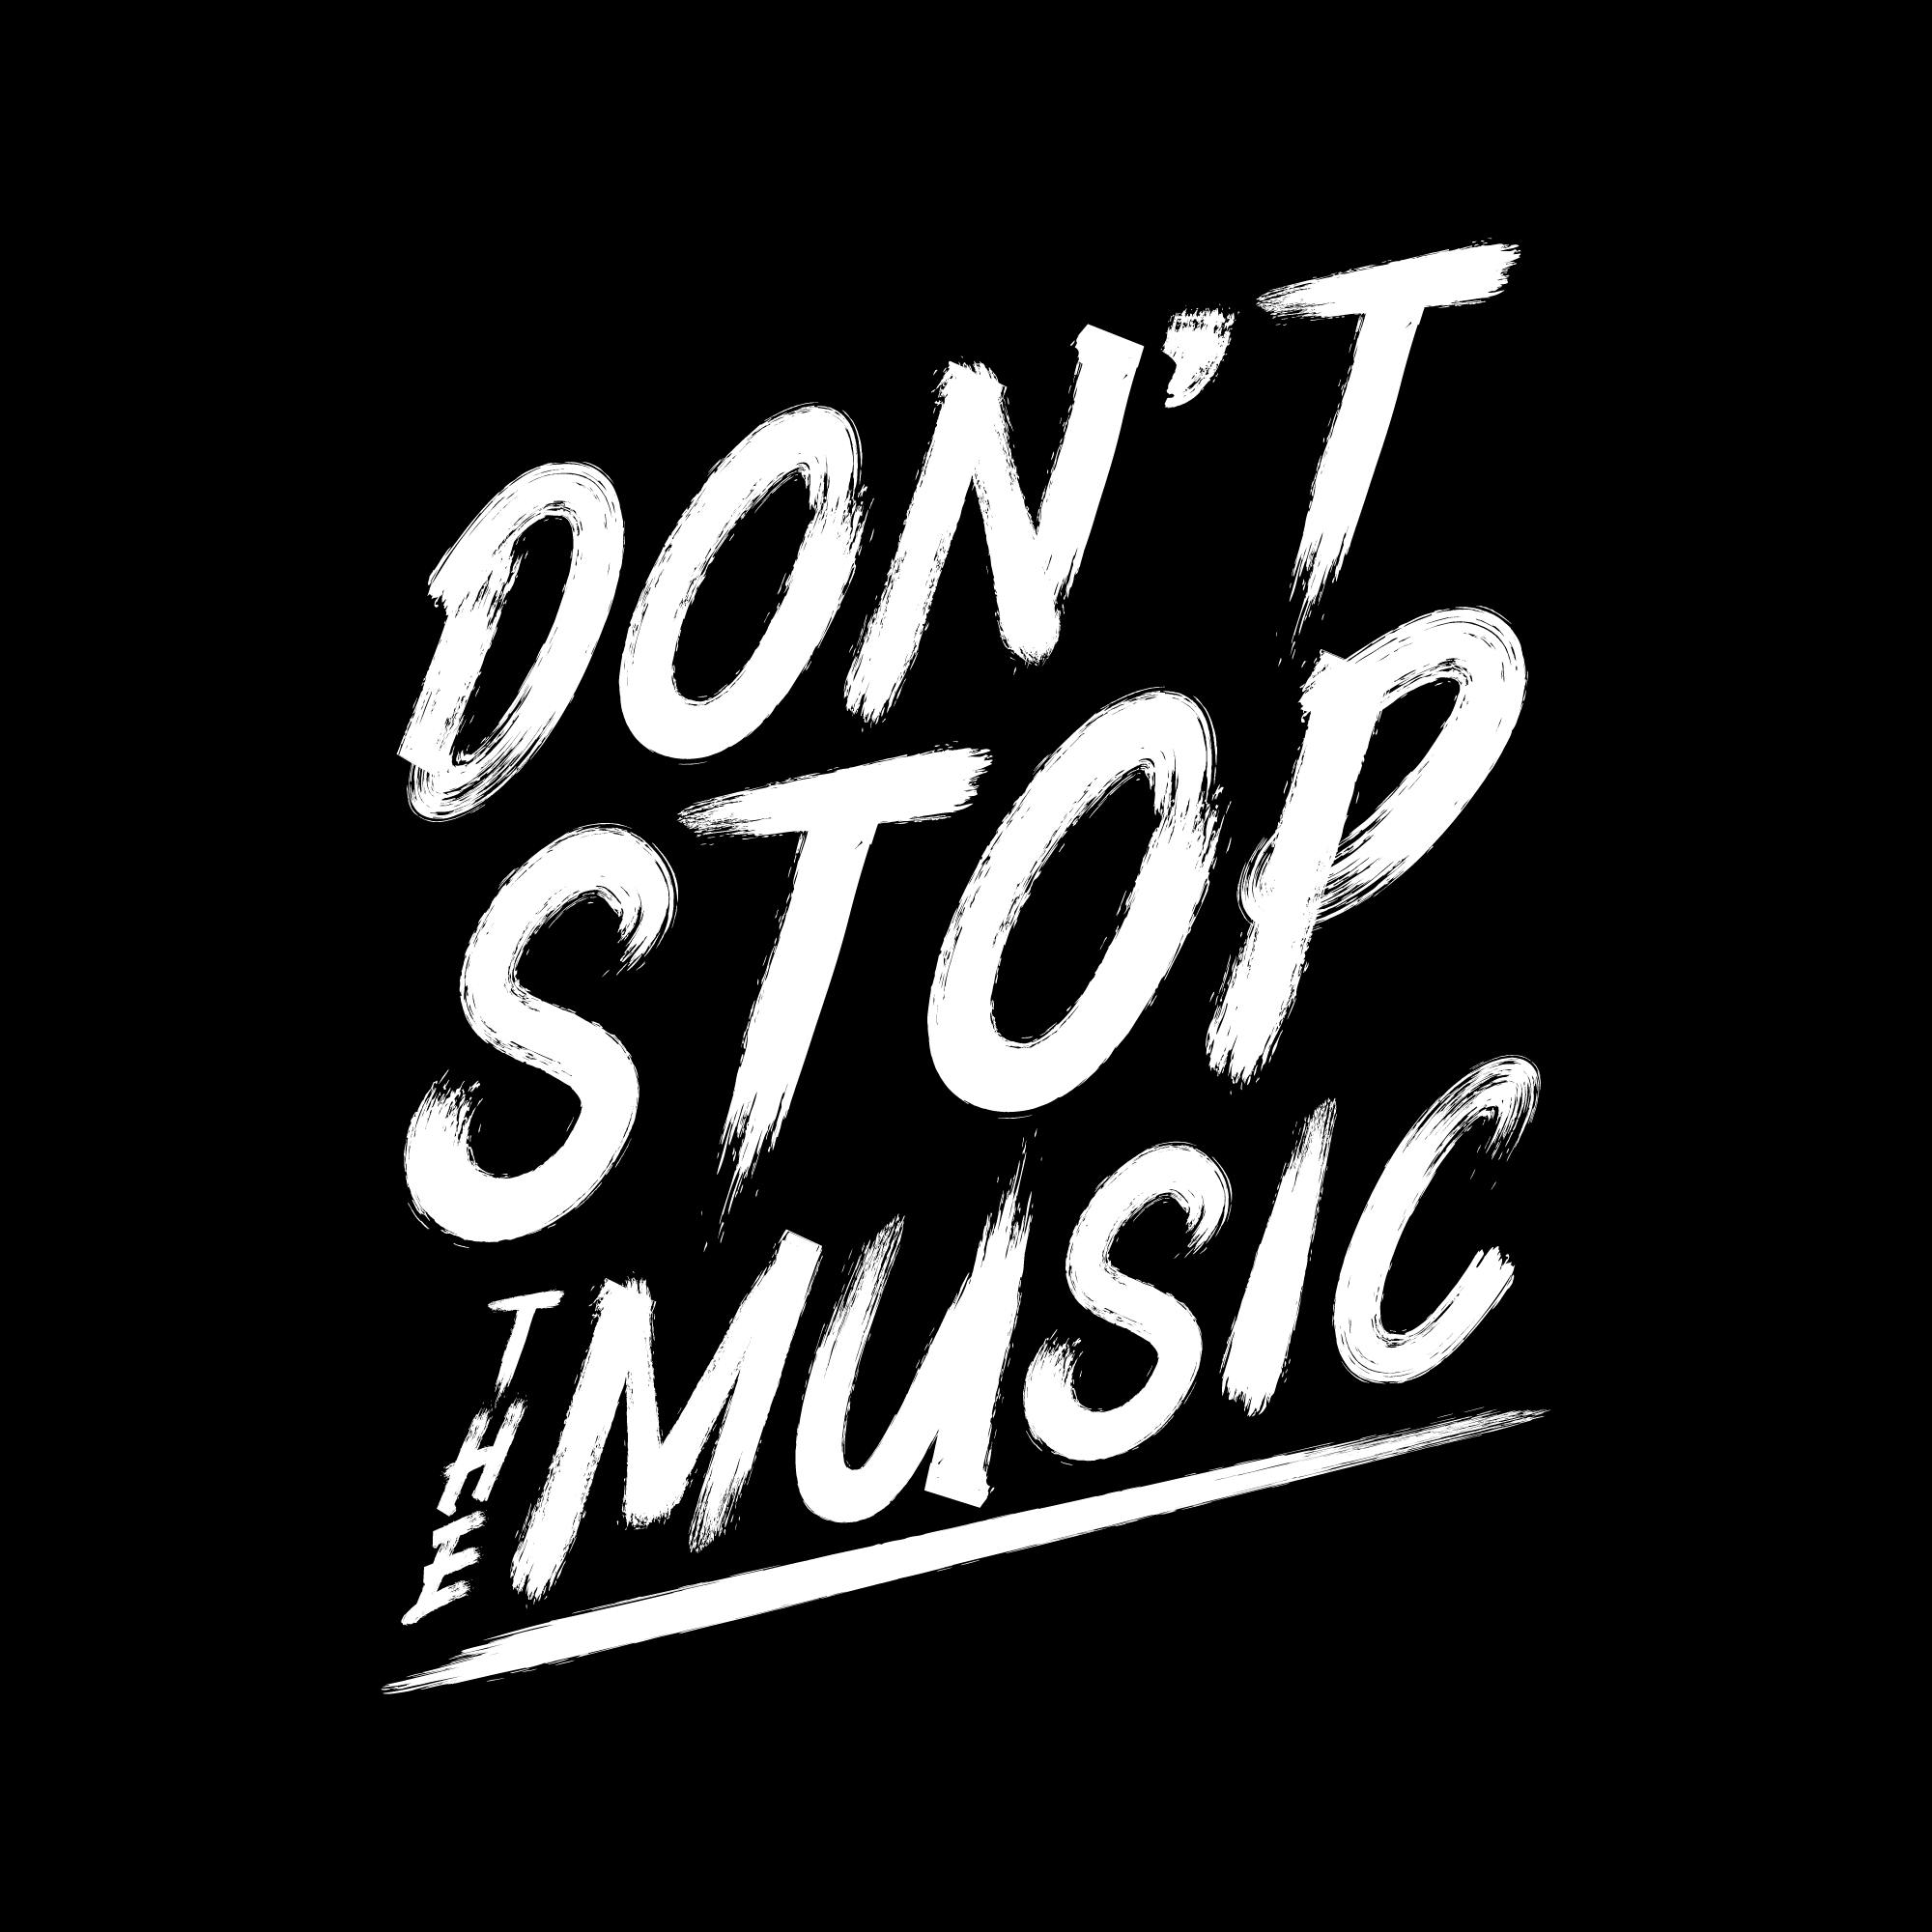 CAMPFIRE　Music！ライブハウスを守るために。　The　Stop　Don't　(キャンプファイヤー)